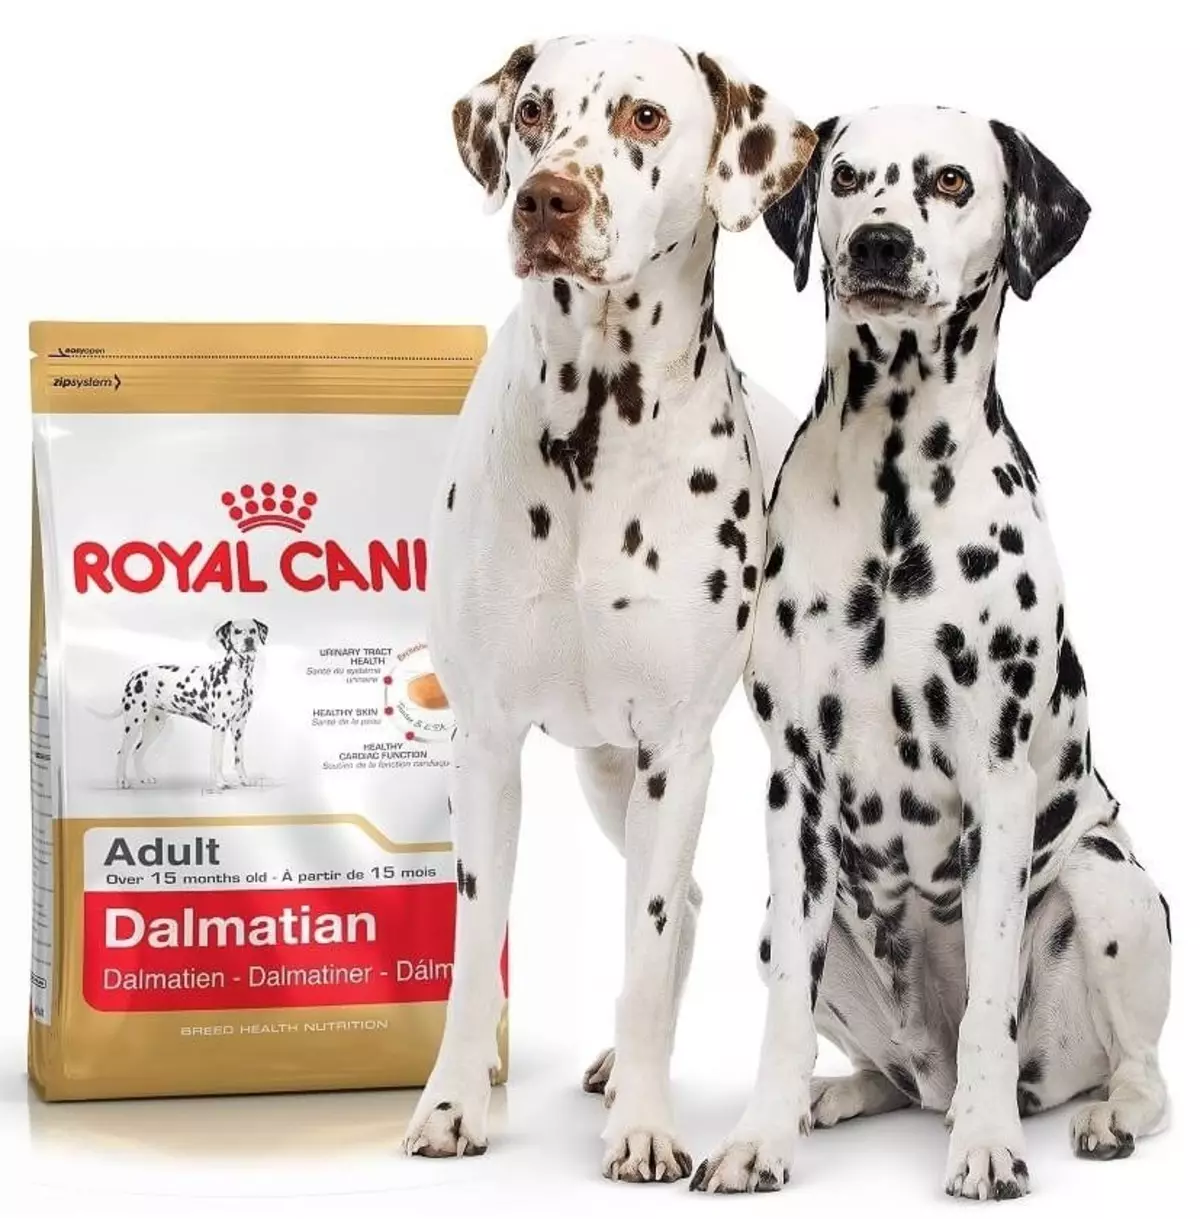 Dalmatian (89 사진) : 강아지와 성인 개 설명, 품종의 성격의 특성. 메텐의 특성. 소유권 리뷰 12249_43